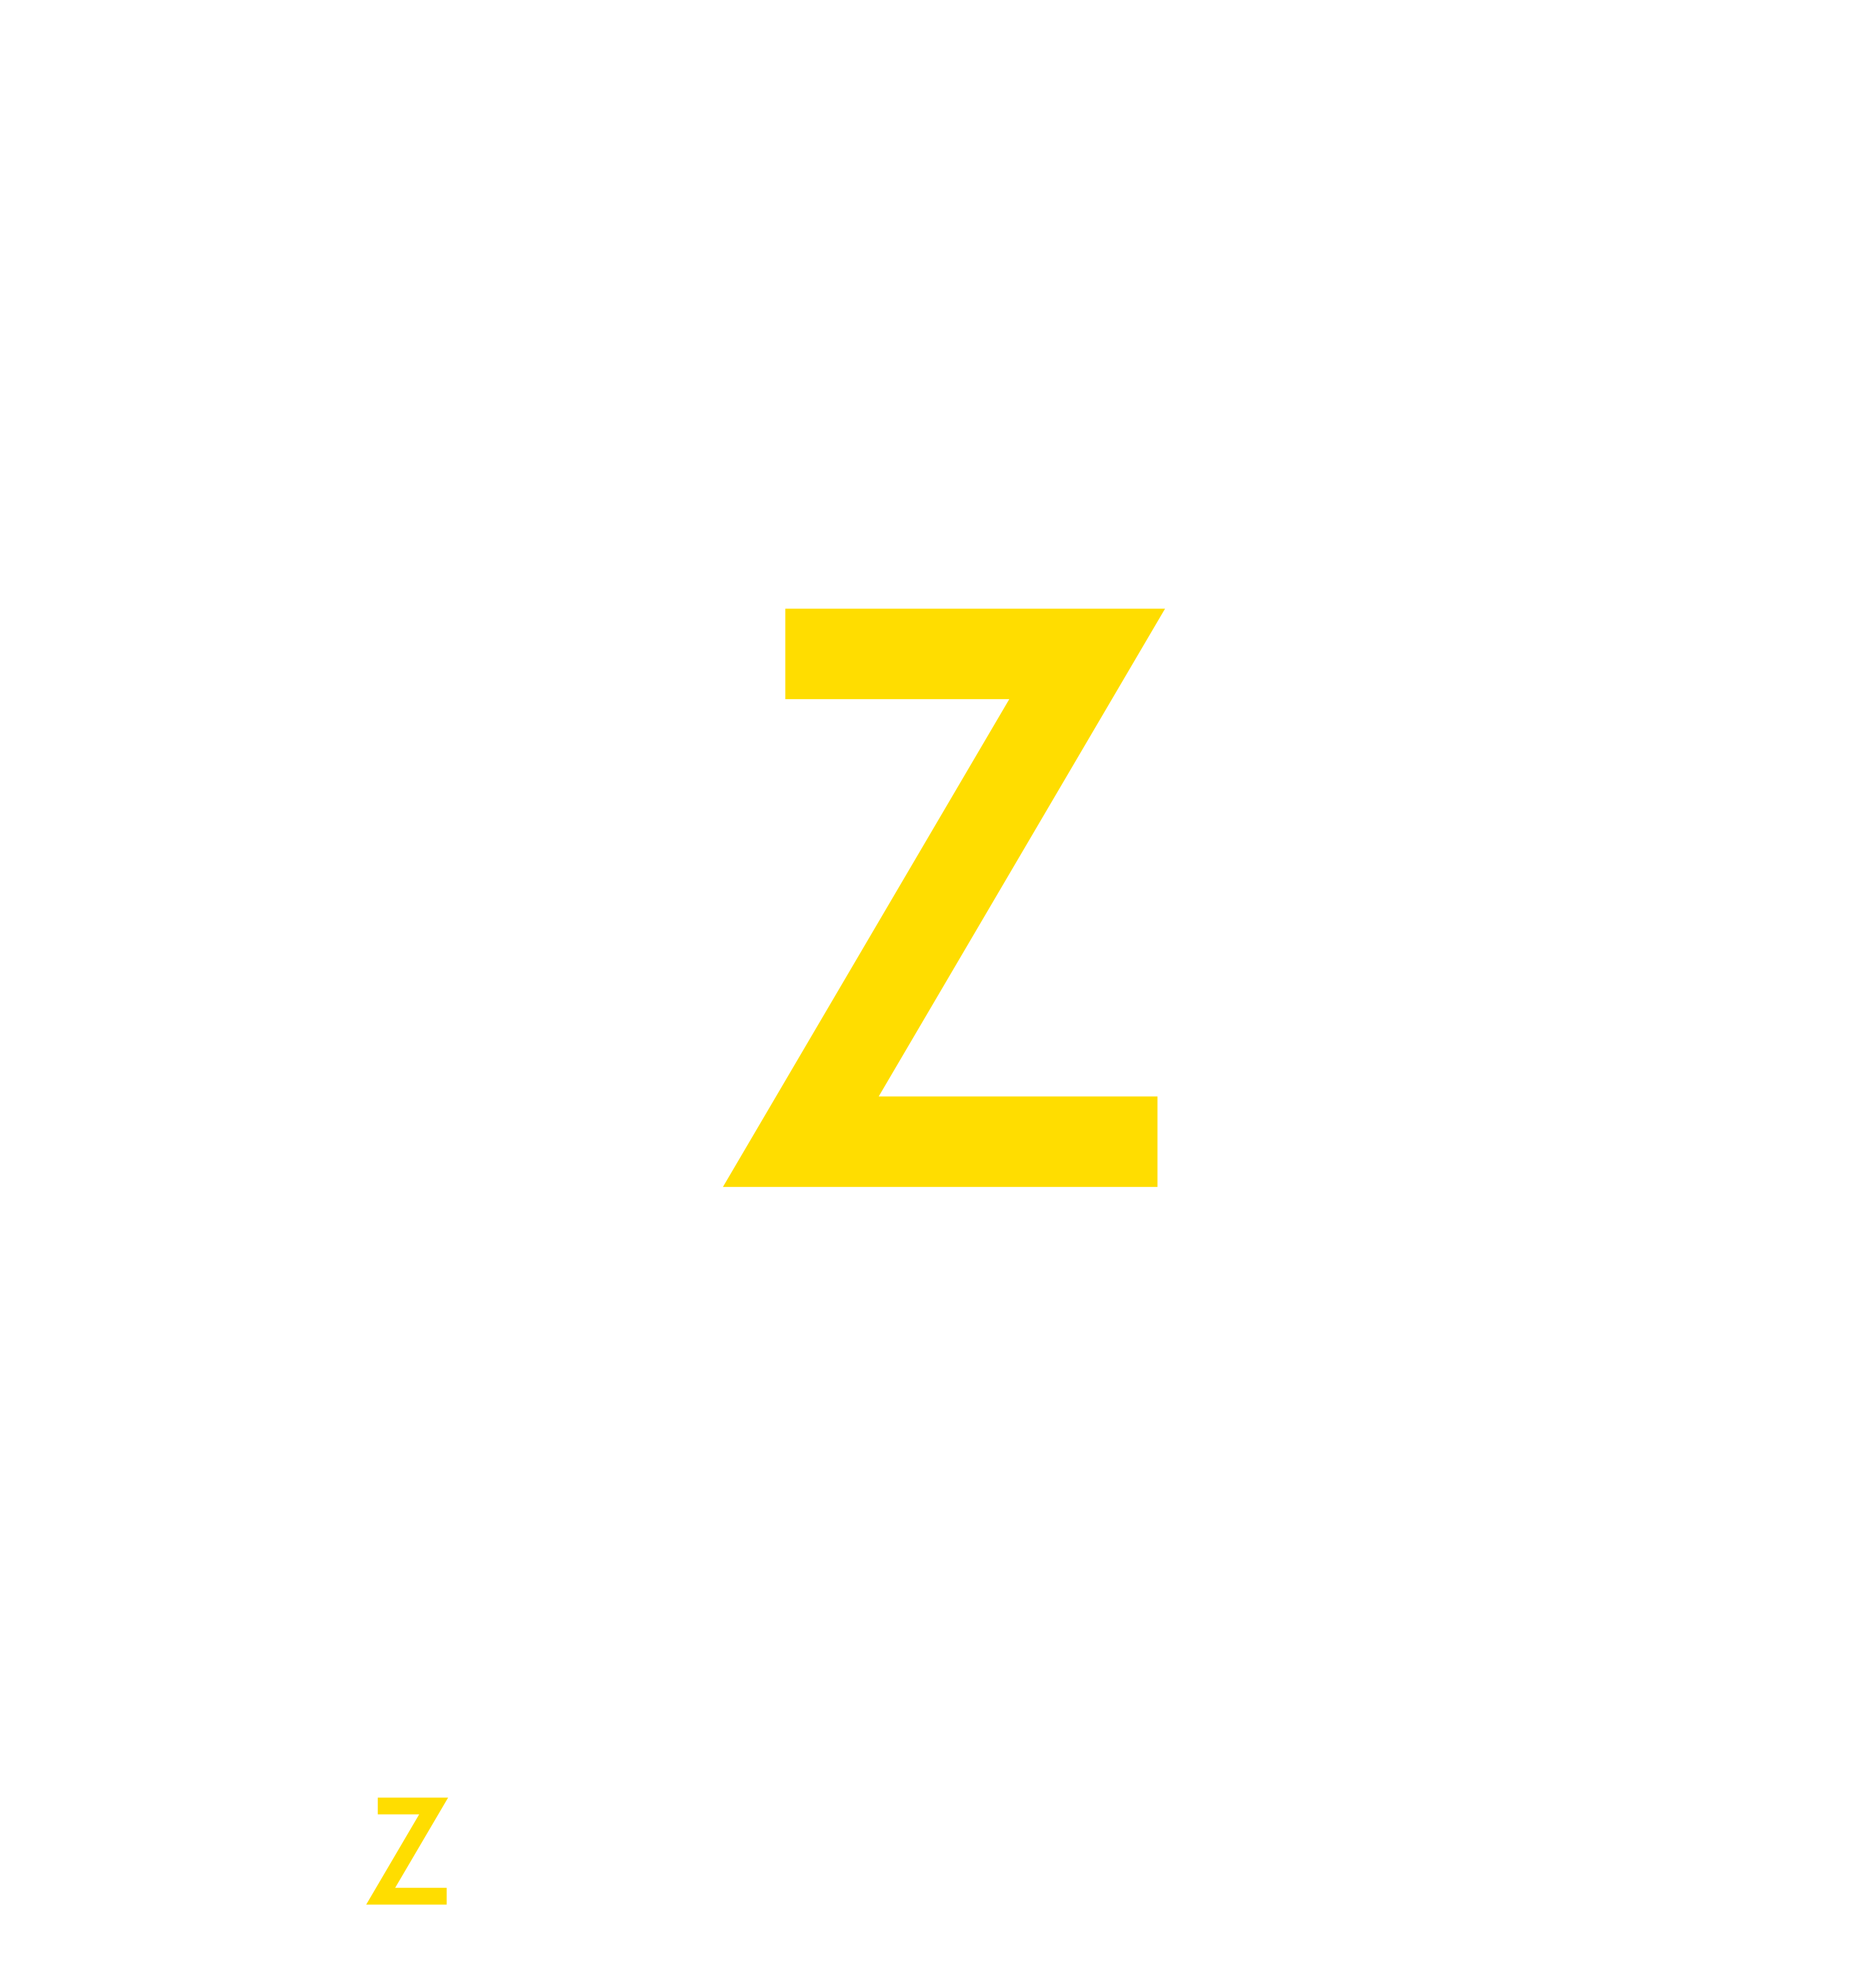 Zehn Solutions